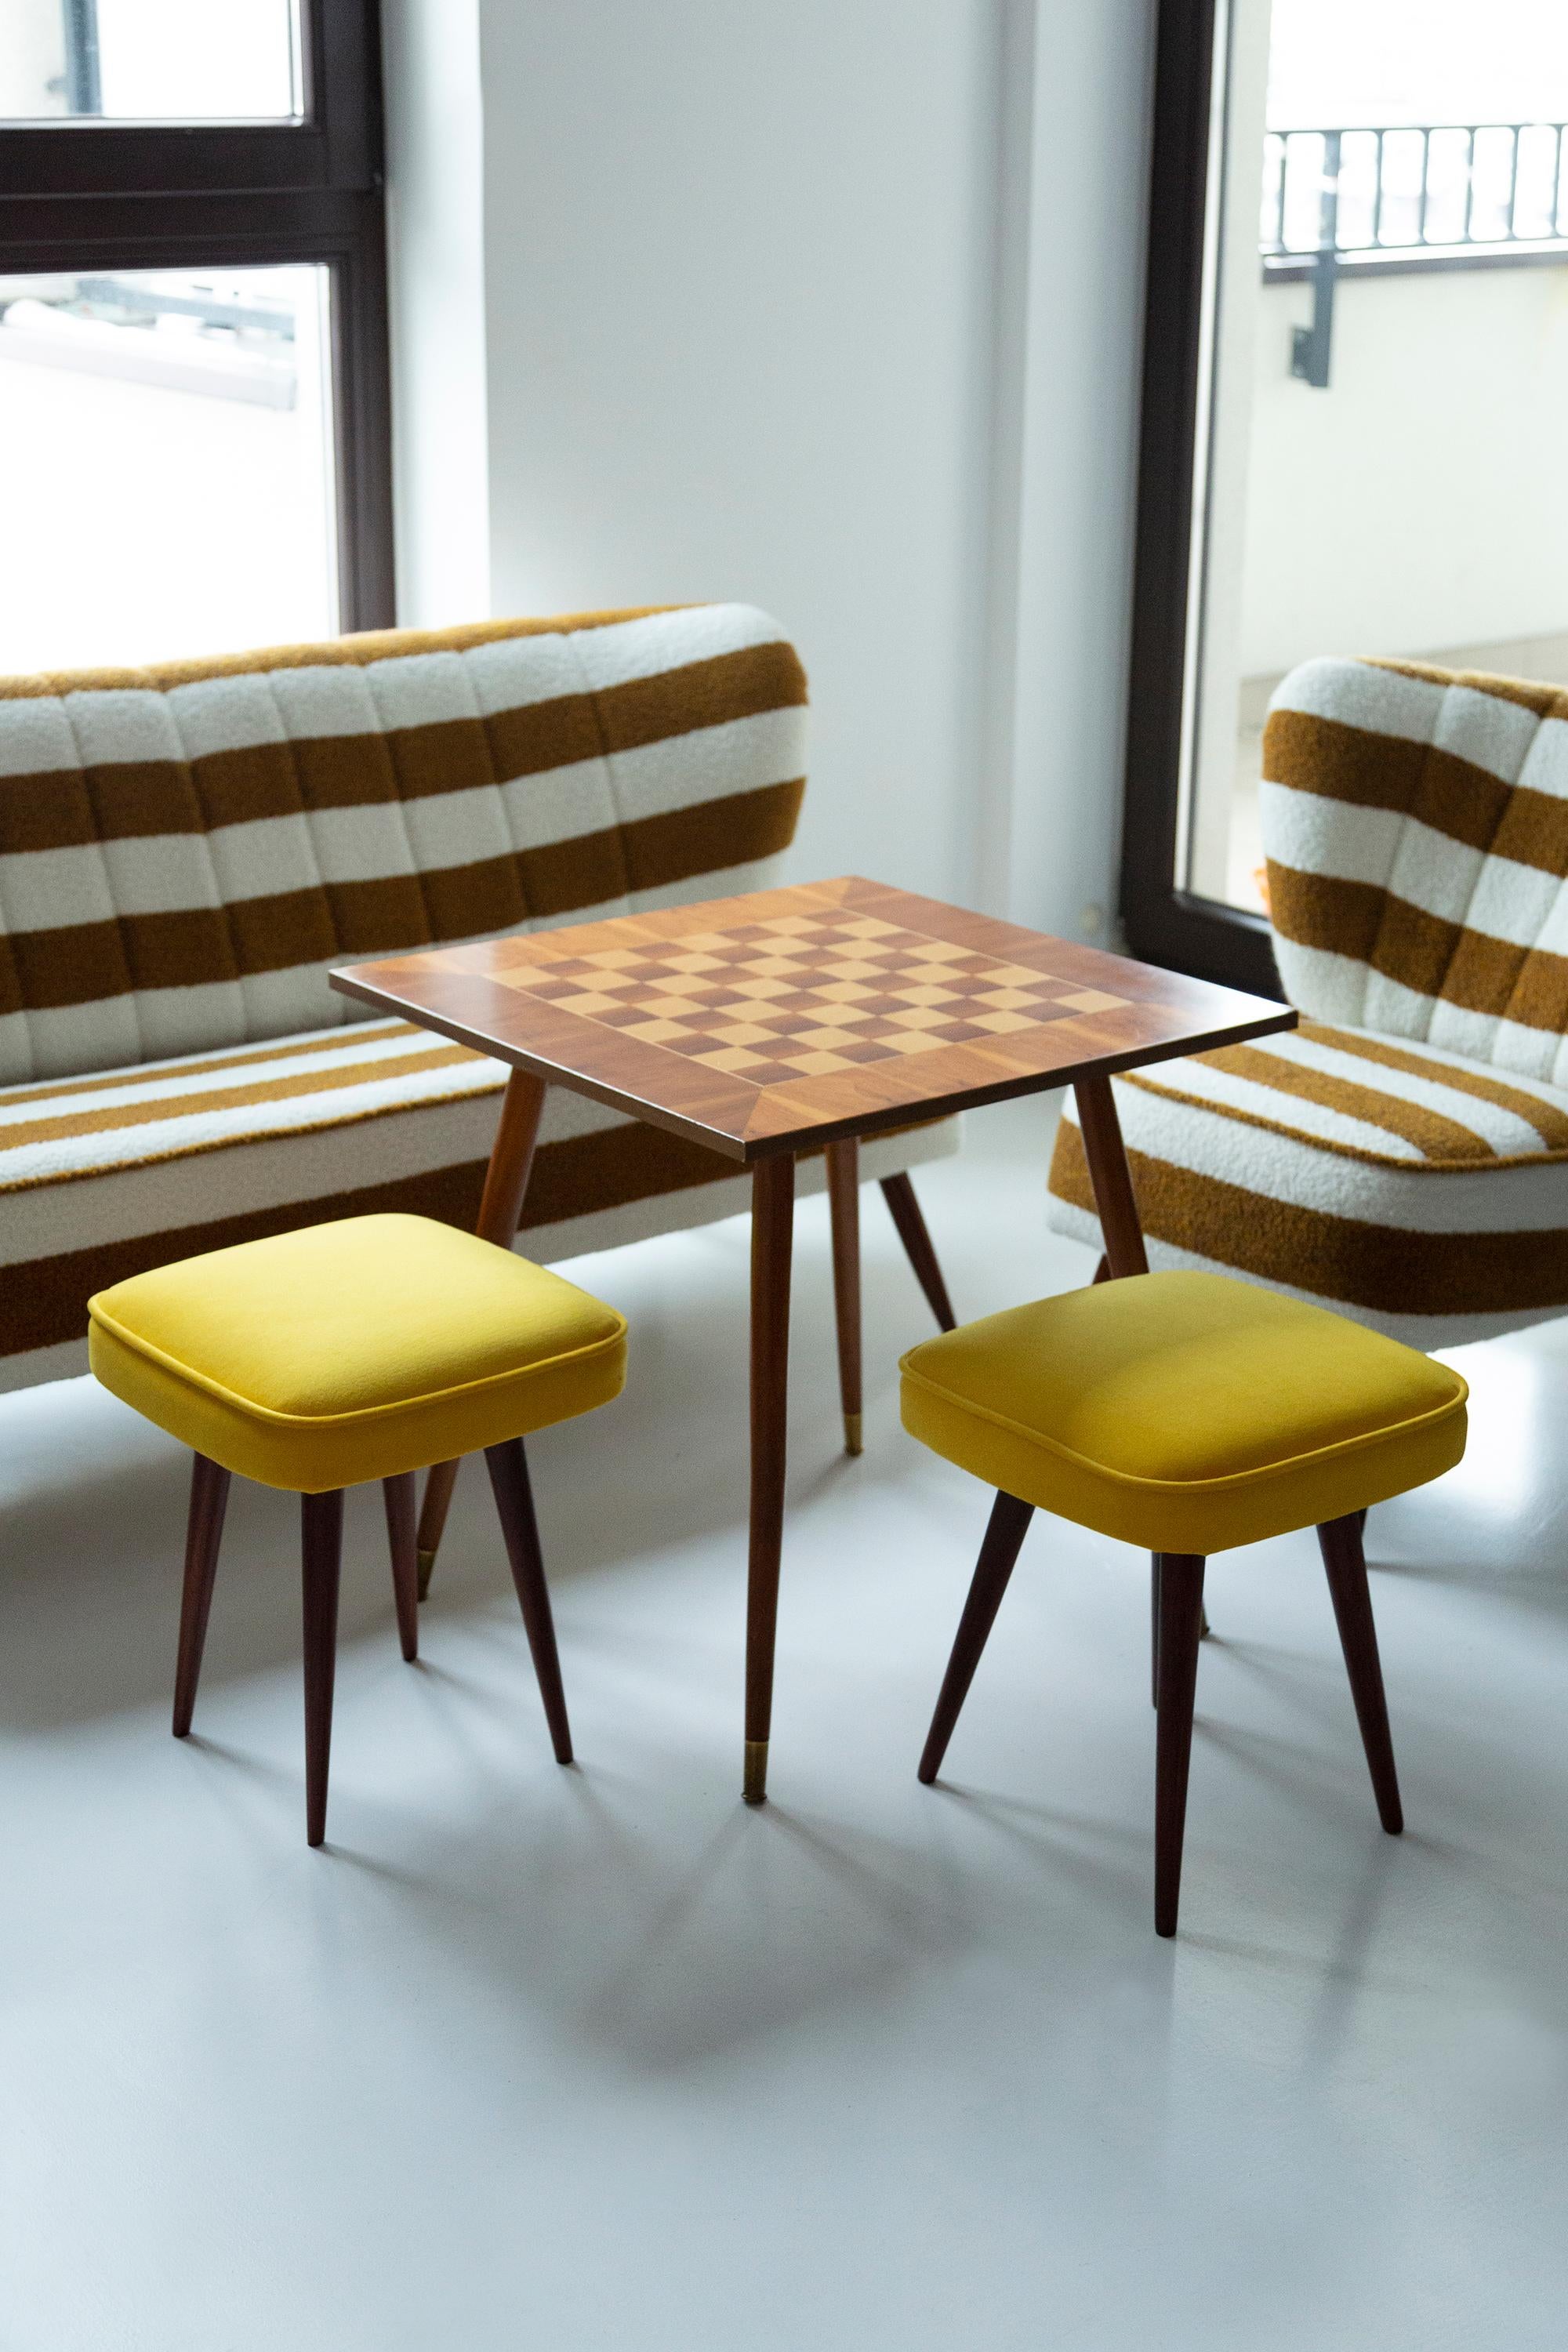 Tabourets du tournant des années 1960 et 1970. Magnifique tapisserie en velours moutarde. Les tabourets sont composés d'une partie rembourrée, d'un siège et de pieds en bois se rétrécissant vers le bas, caractéristiques du style des années 1960.